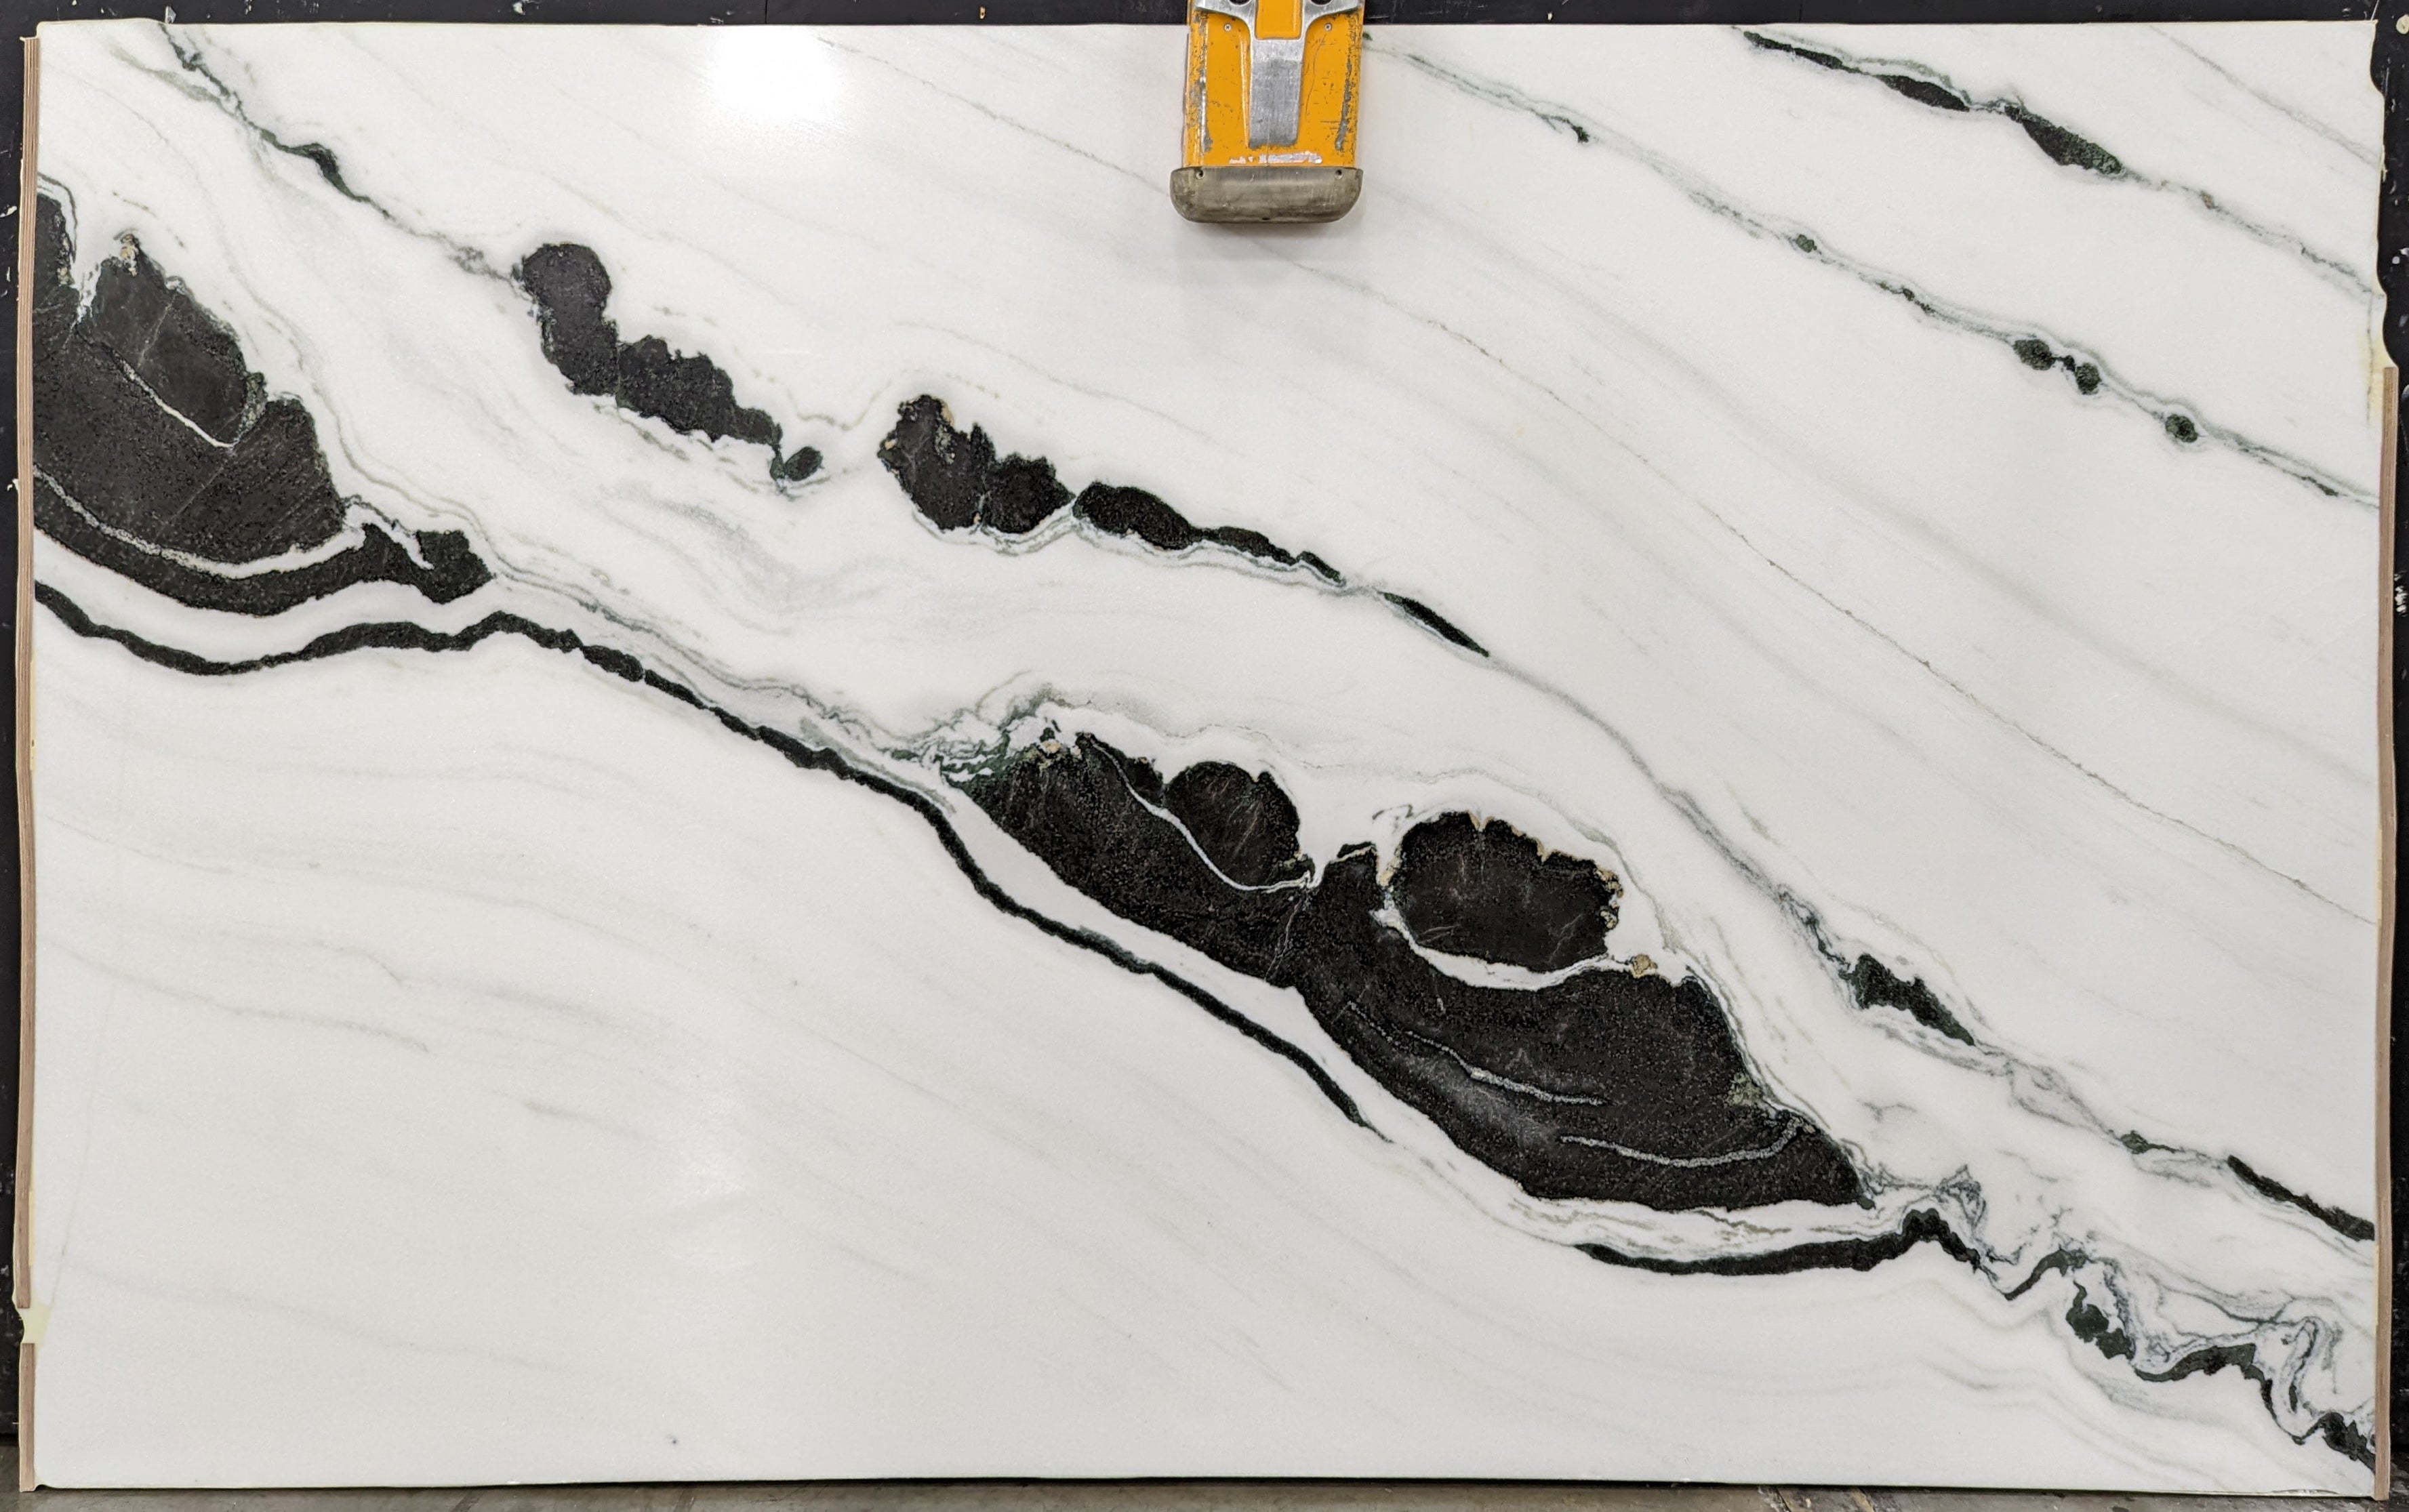  Panda White Marble Slab 3/4  Polished Stone - P12722#11 -  65x103 